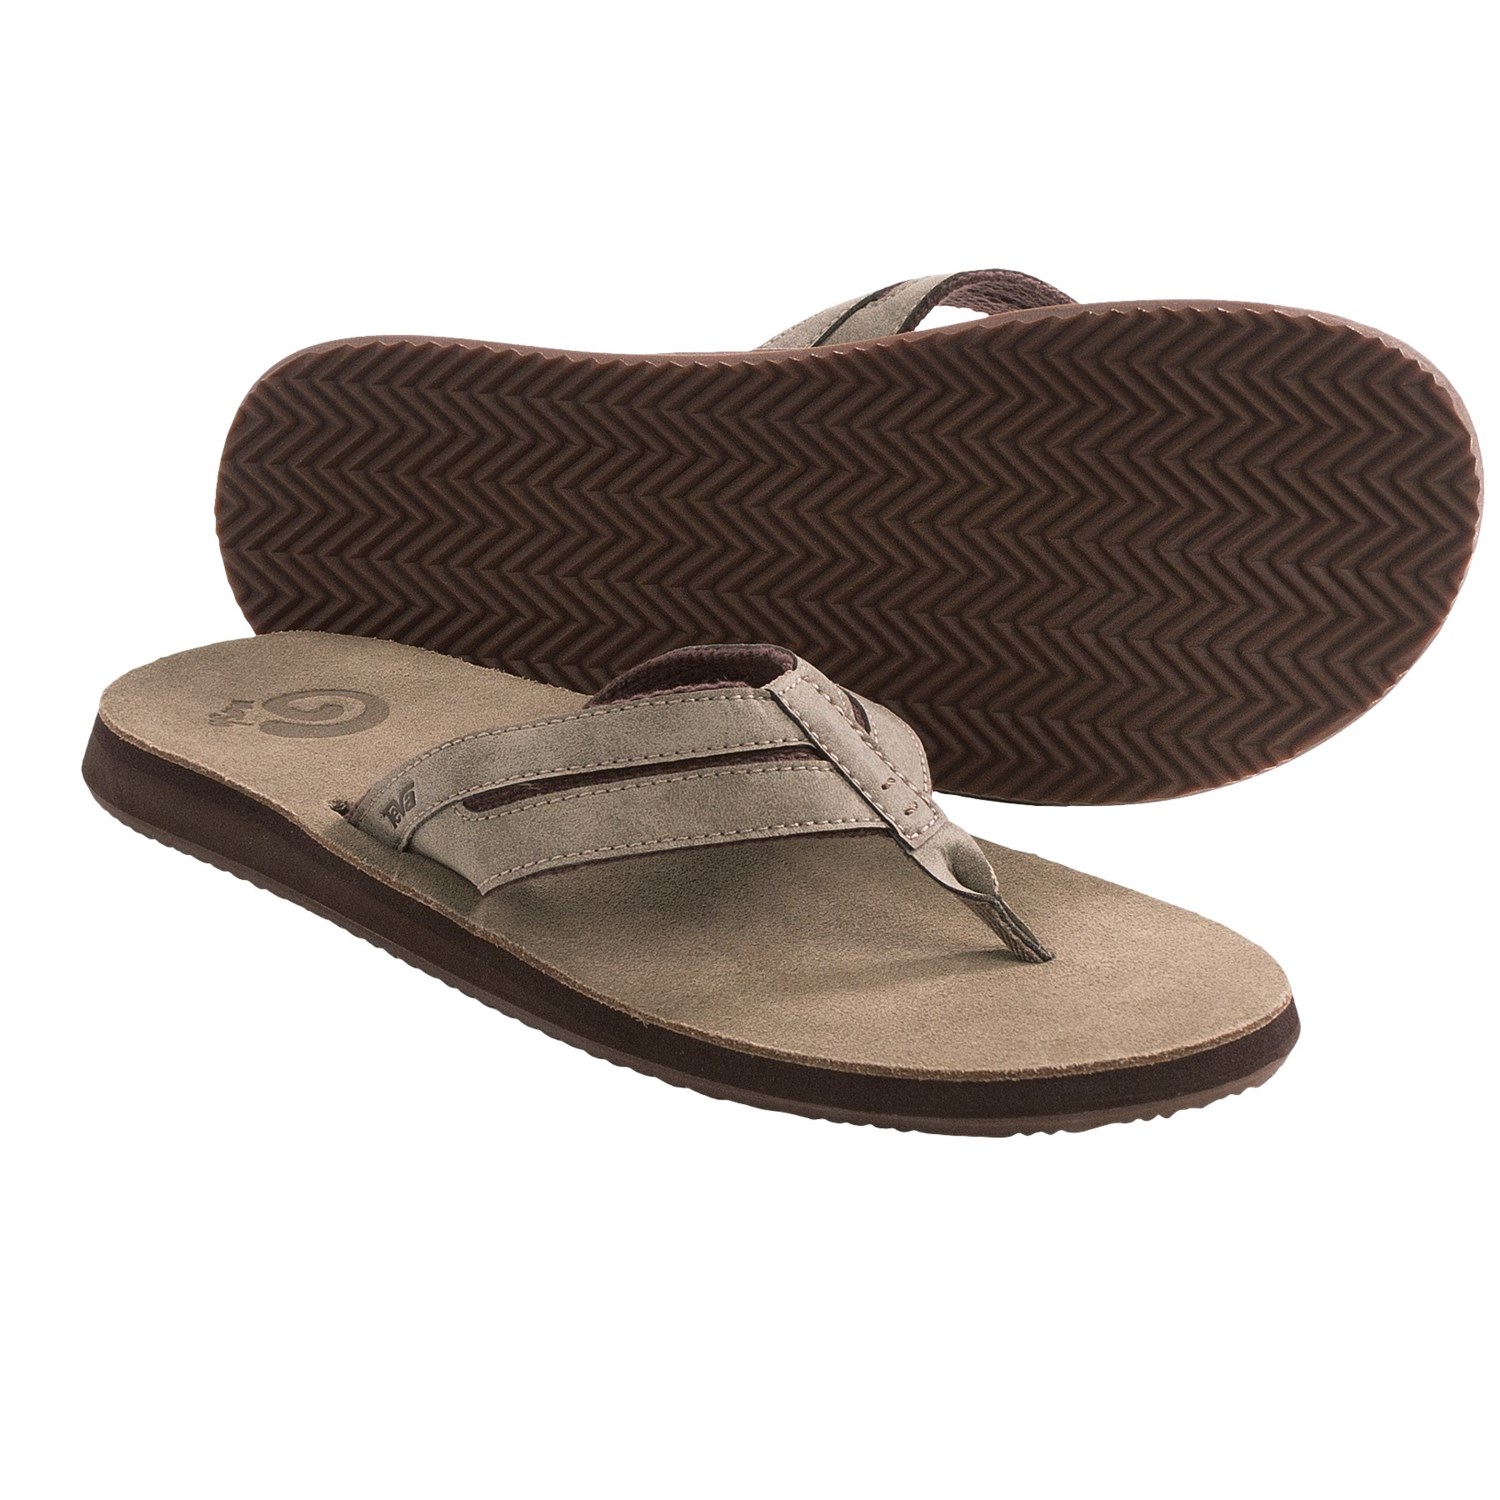 Teva Eddy Flip-Flop Sandals - Leather (For Men) - Save 38%